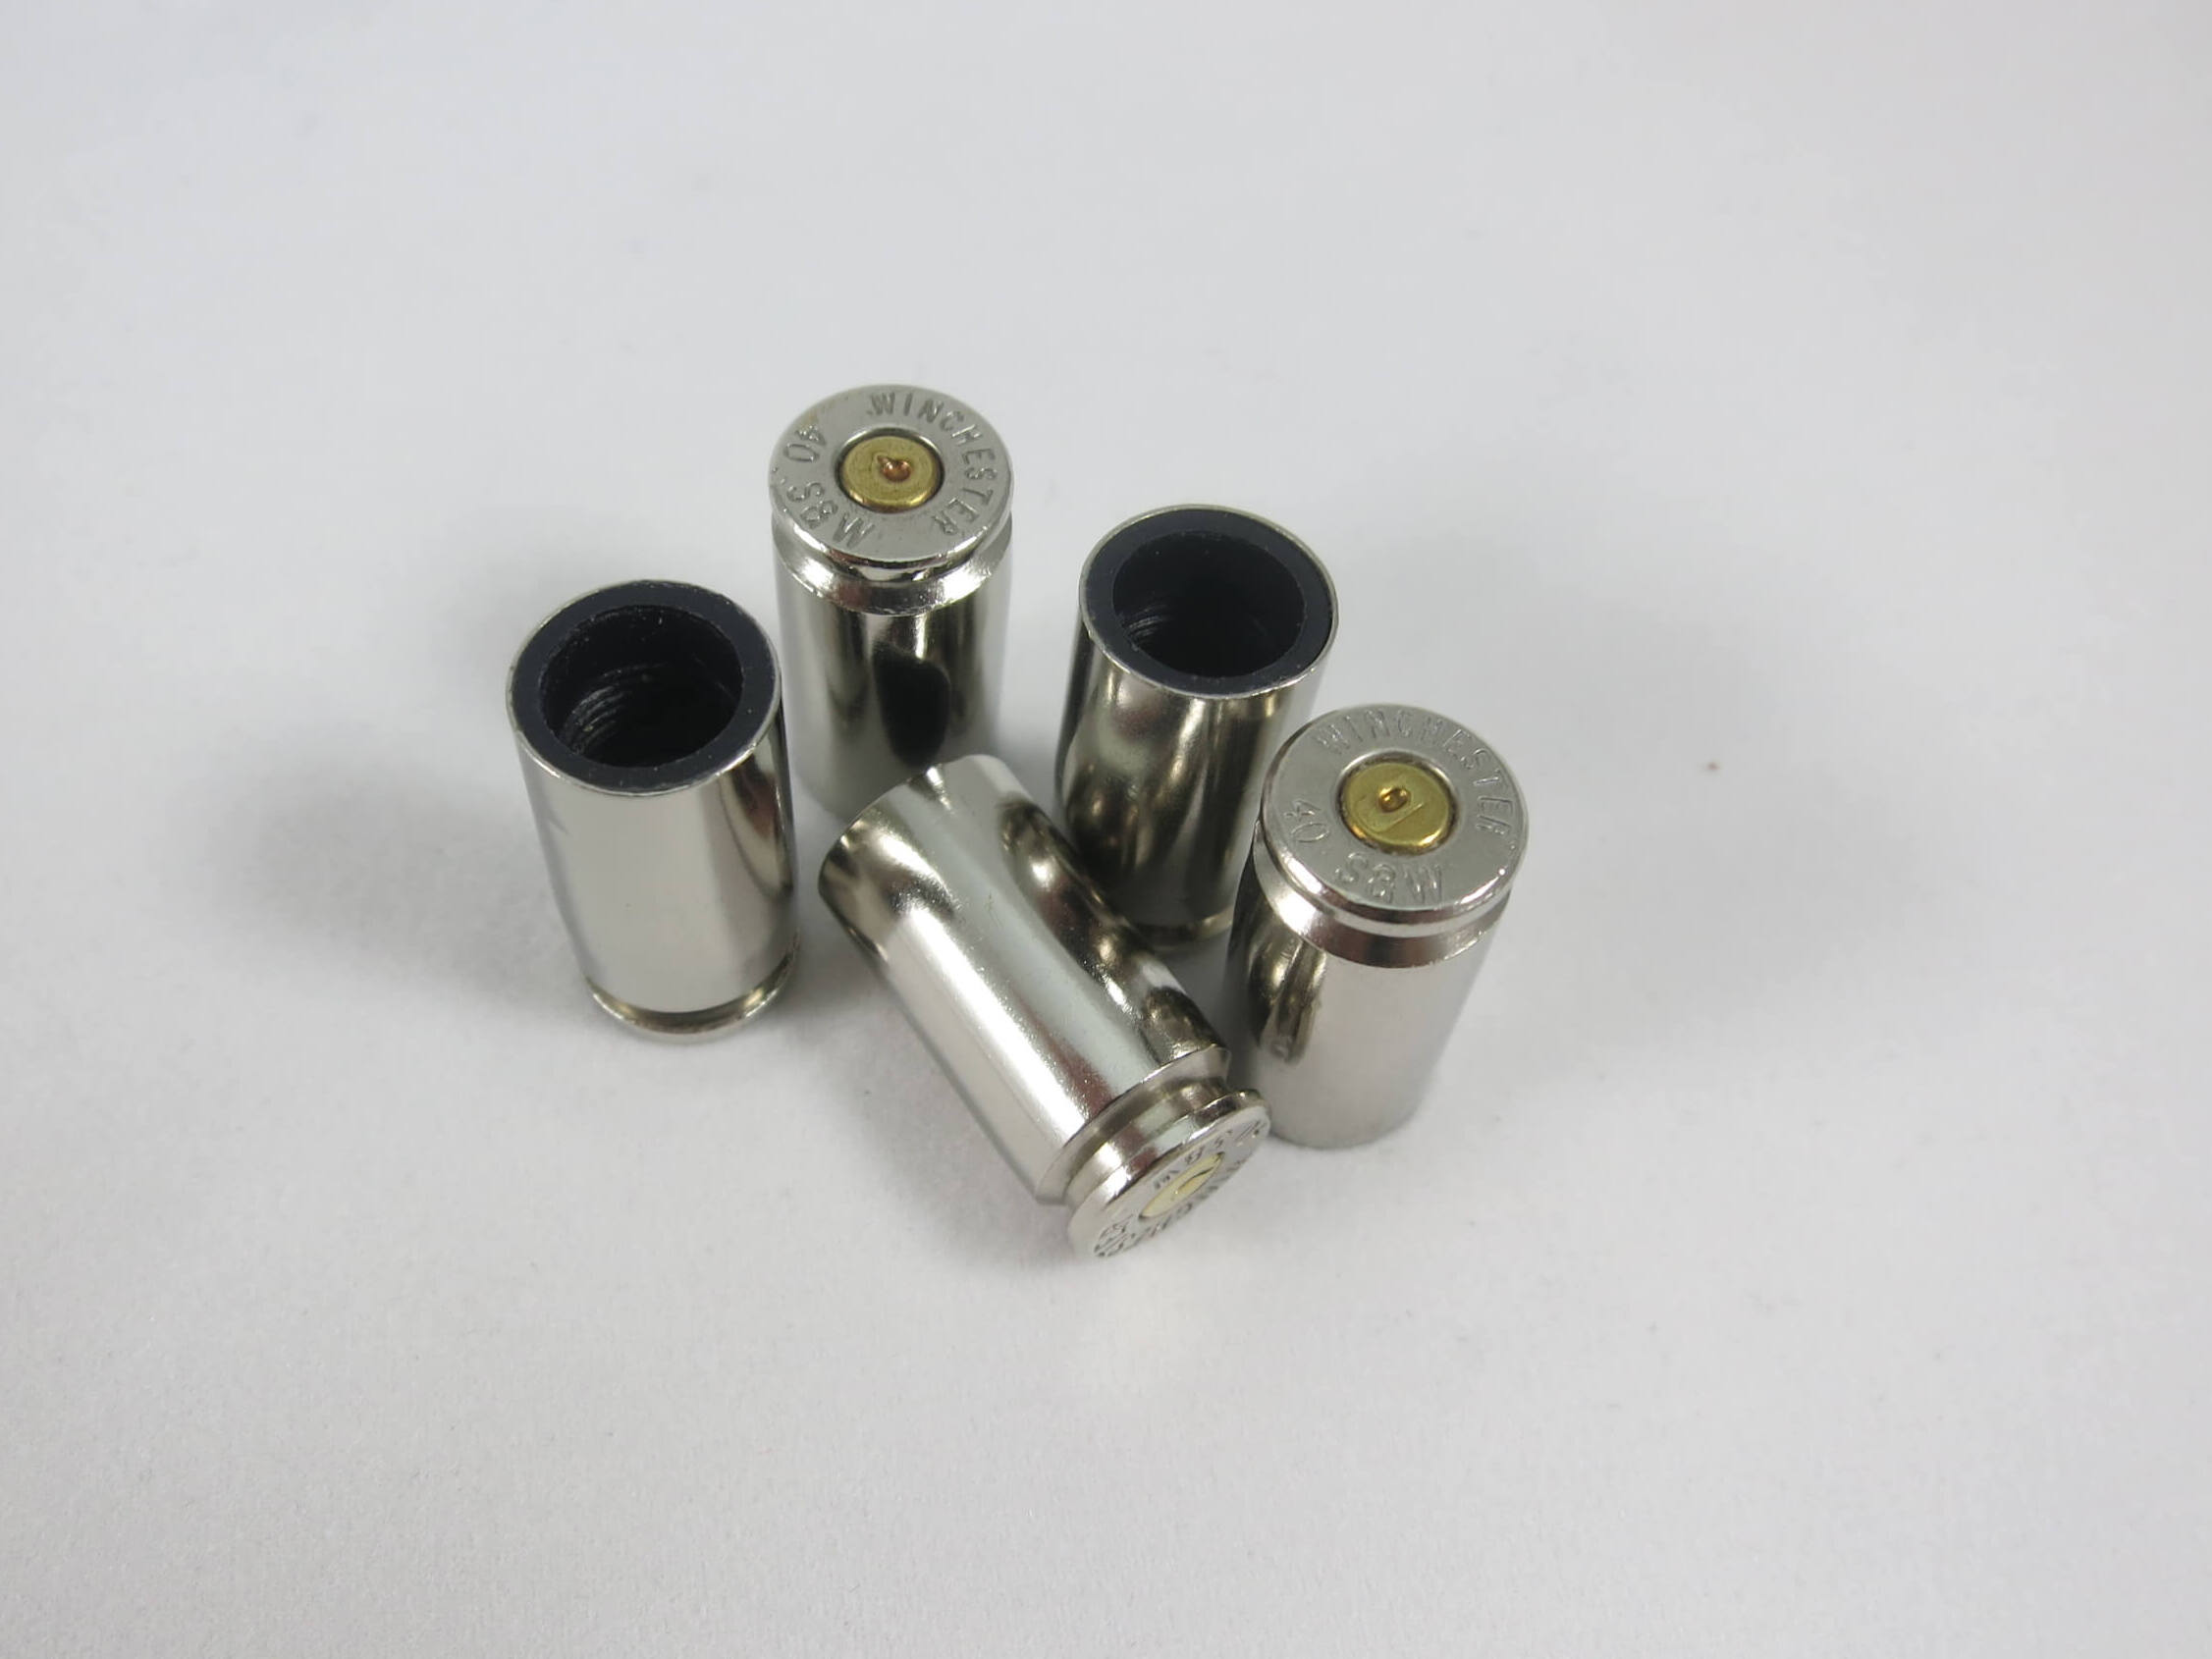 40 S&W nickel case tire valve cap-brass primer-1